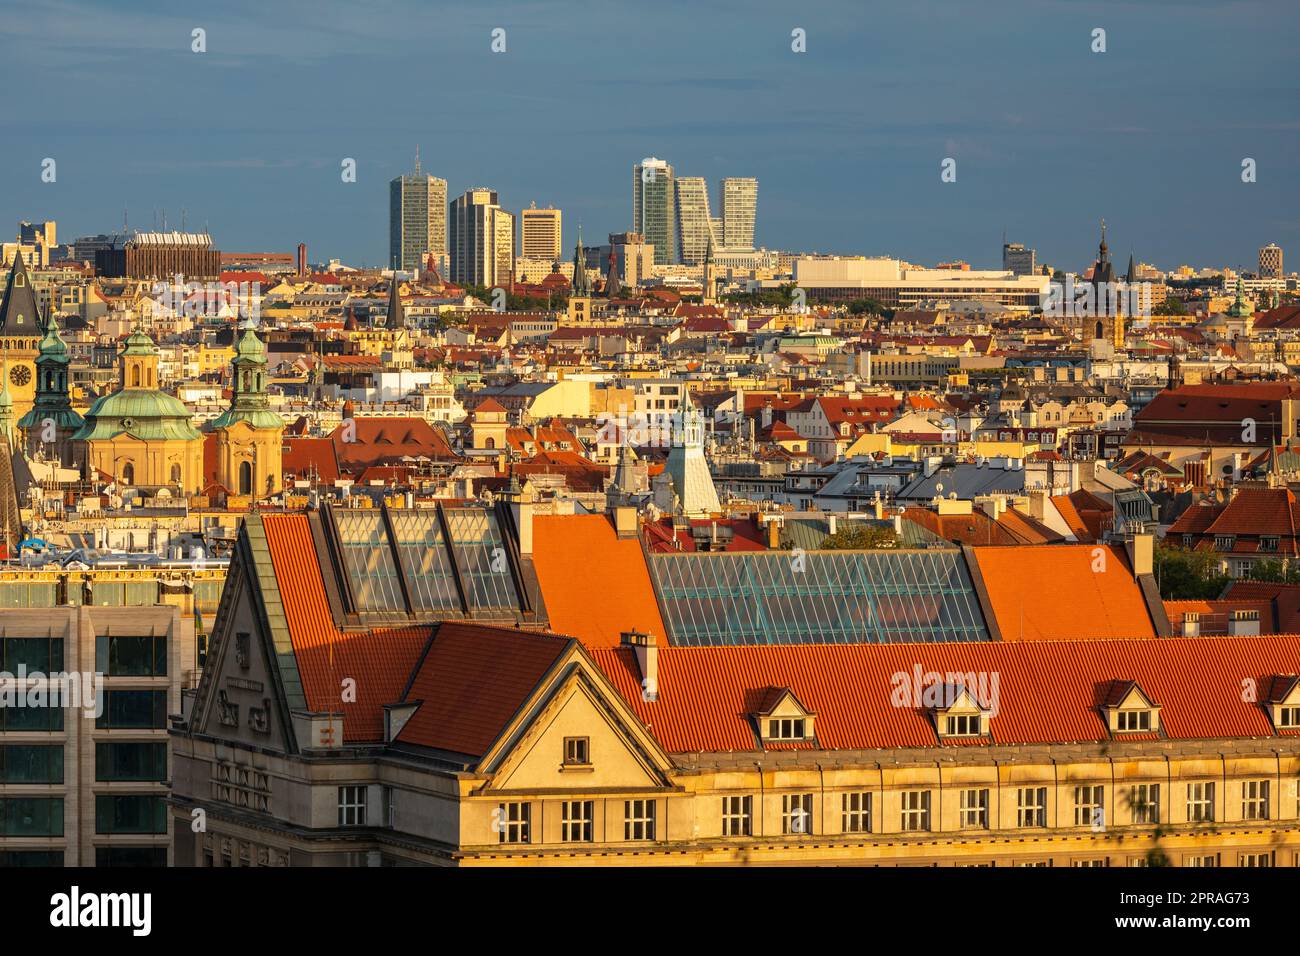 PRAG, TSCHECHISCHE REPUBLIK - Pankrac-Viertel mit modernen Hochhäusern. Stockfoto